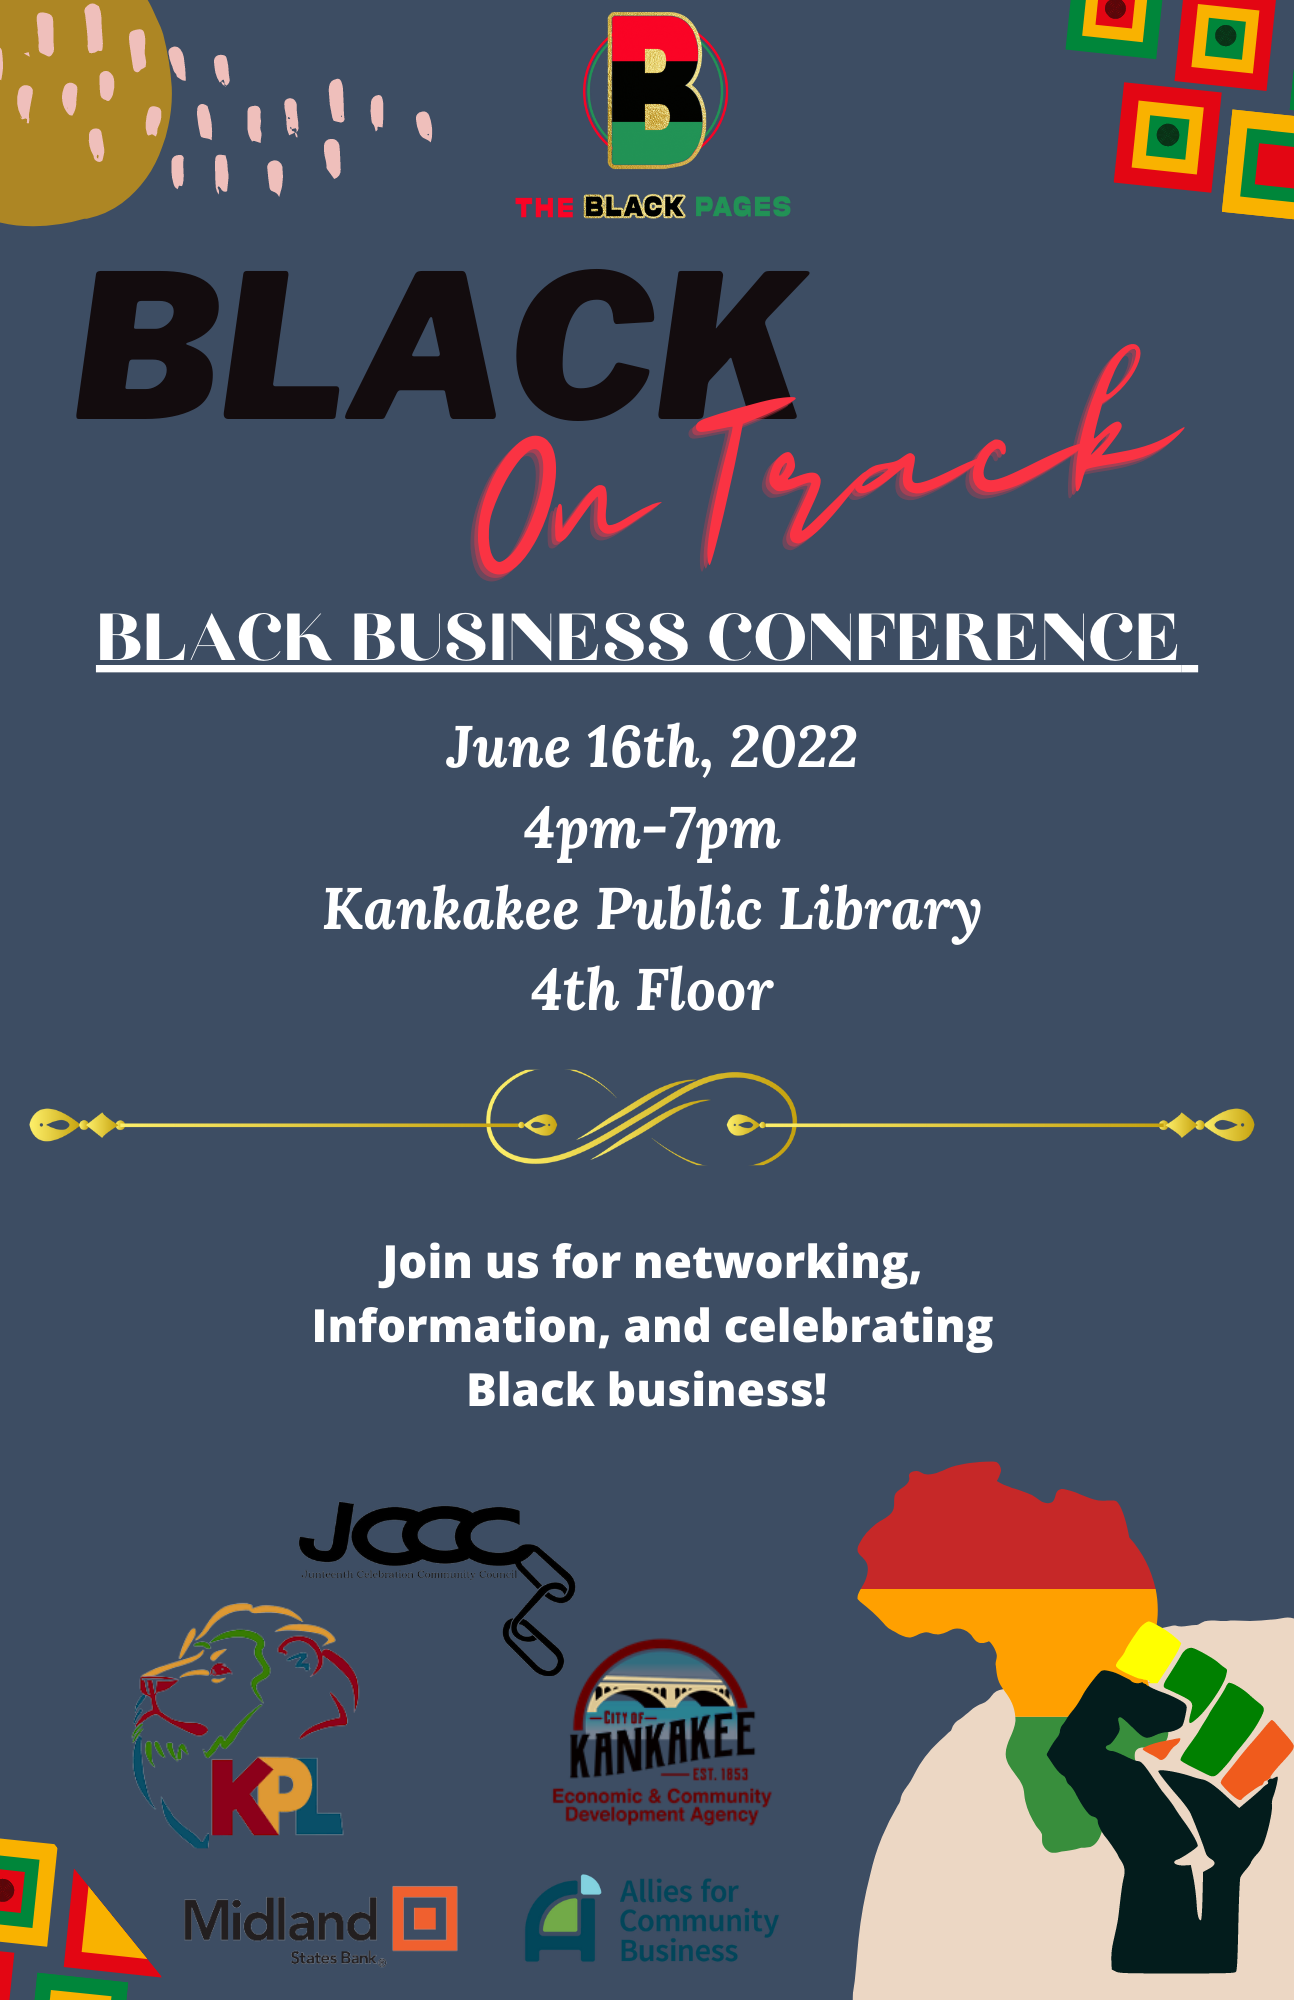 Black on Track: Black Business Conference